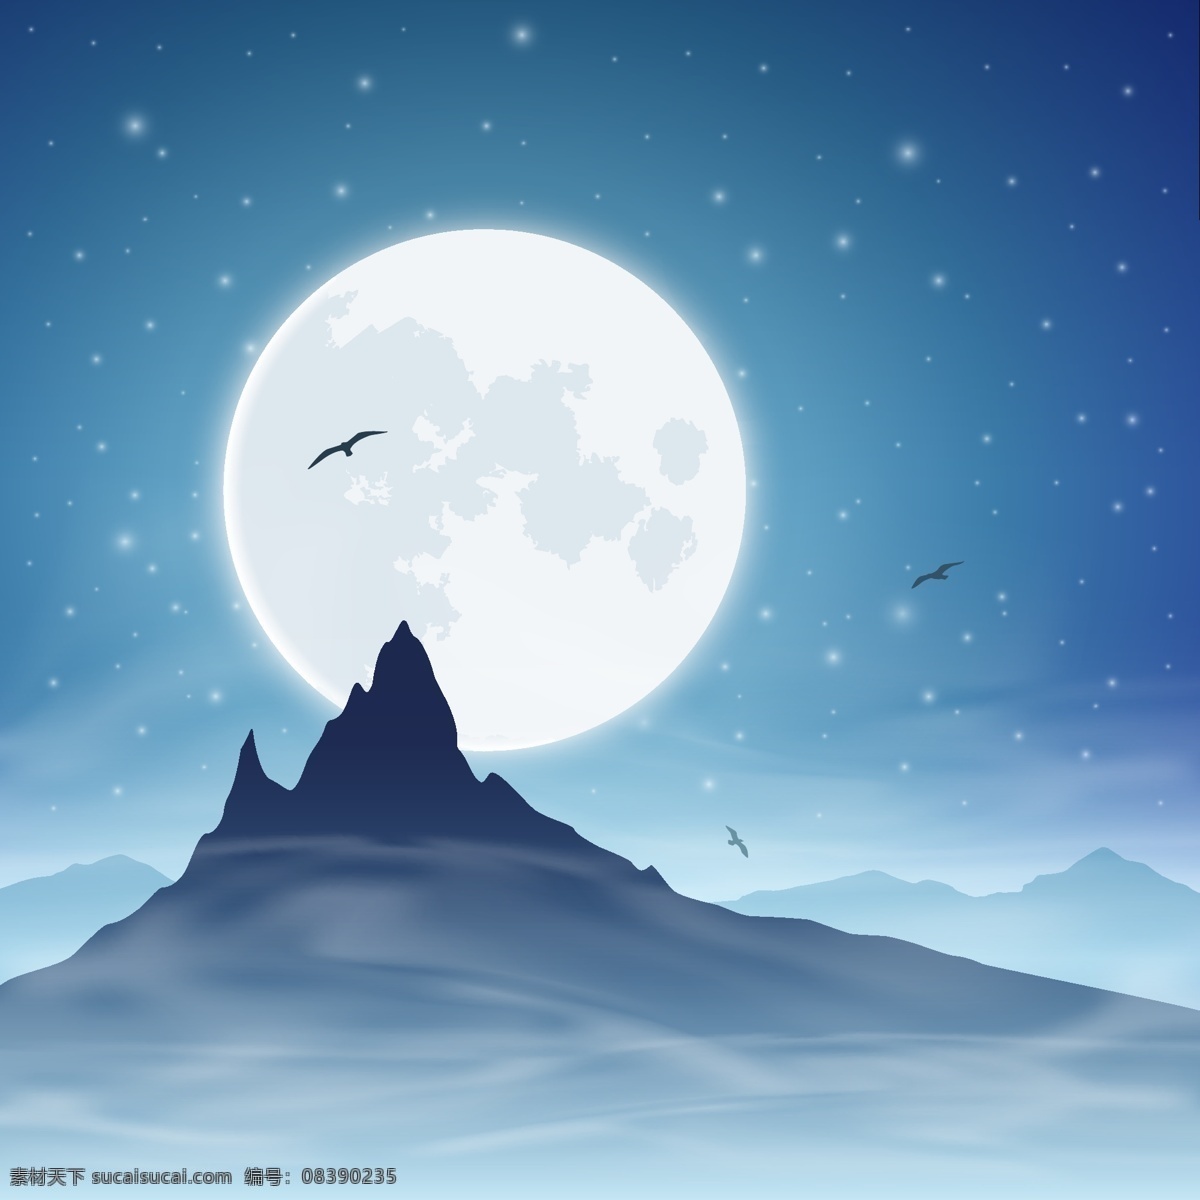 月夜 万圣节 月亮 山峰 夜晚 蓝色 水墨 古典 底图 背景